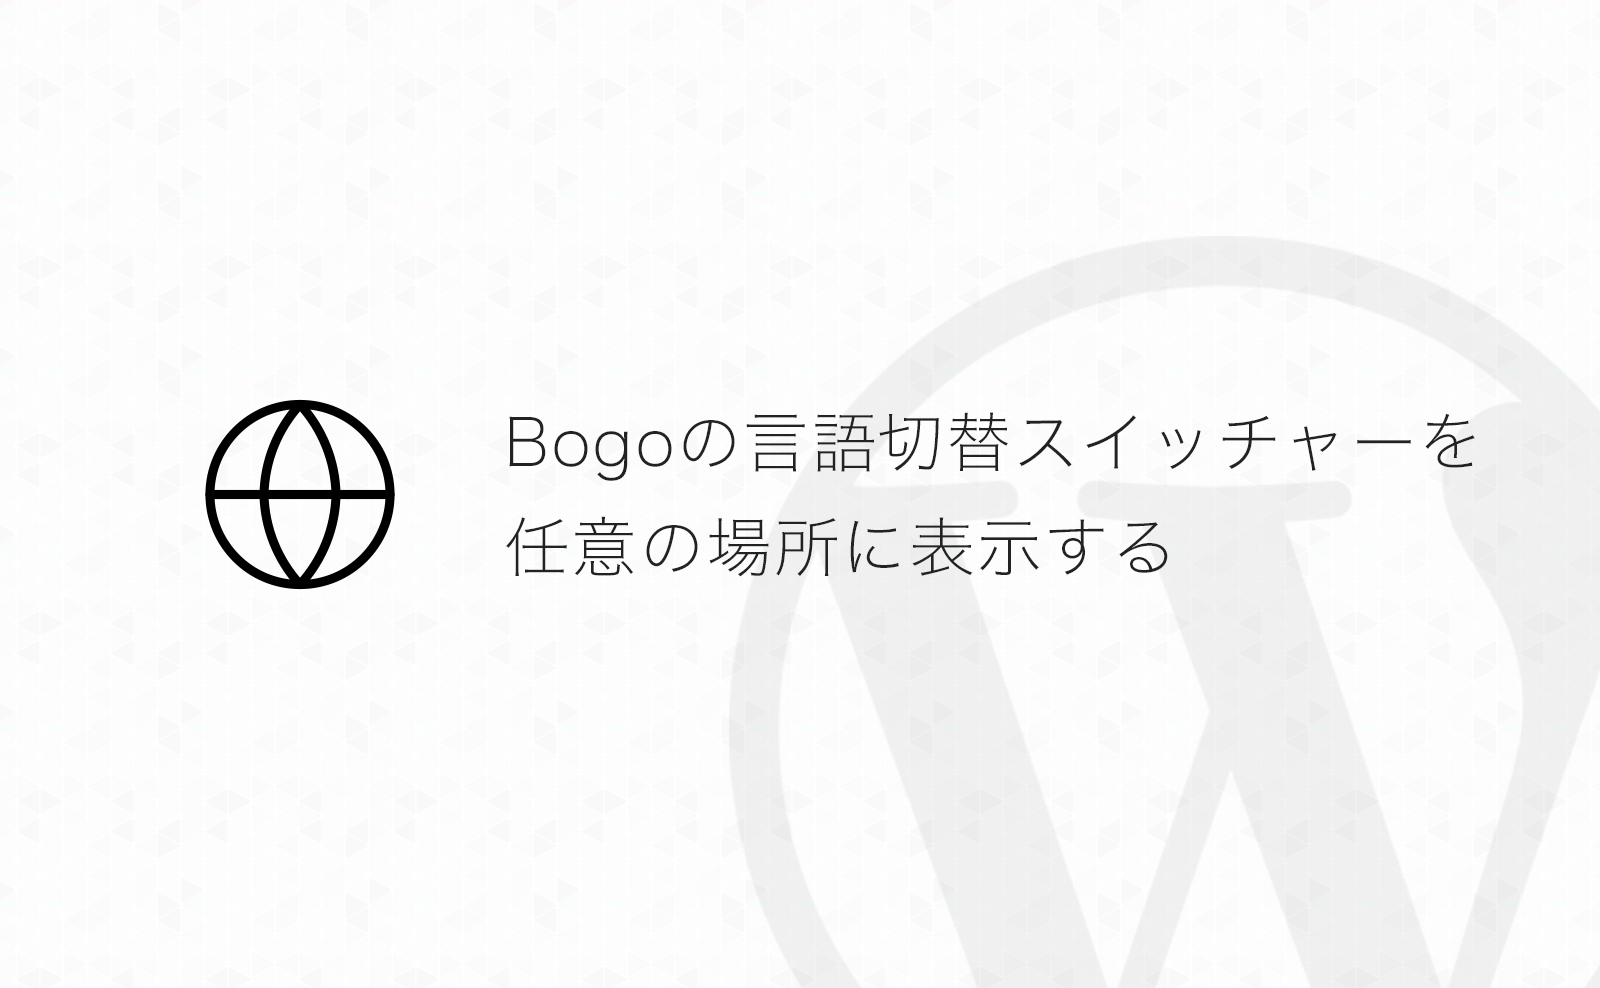 【WordPress】多言語化プラグイン「Bogo」の言語切替スイッチャーを任意の場所に表示させる方法